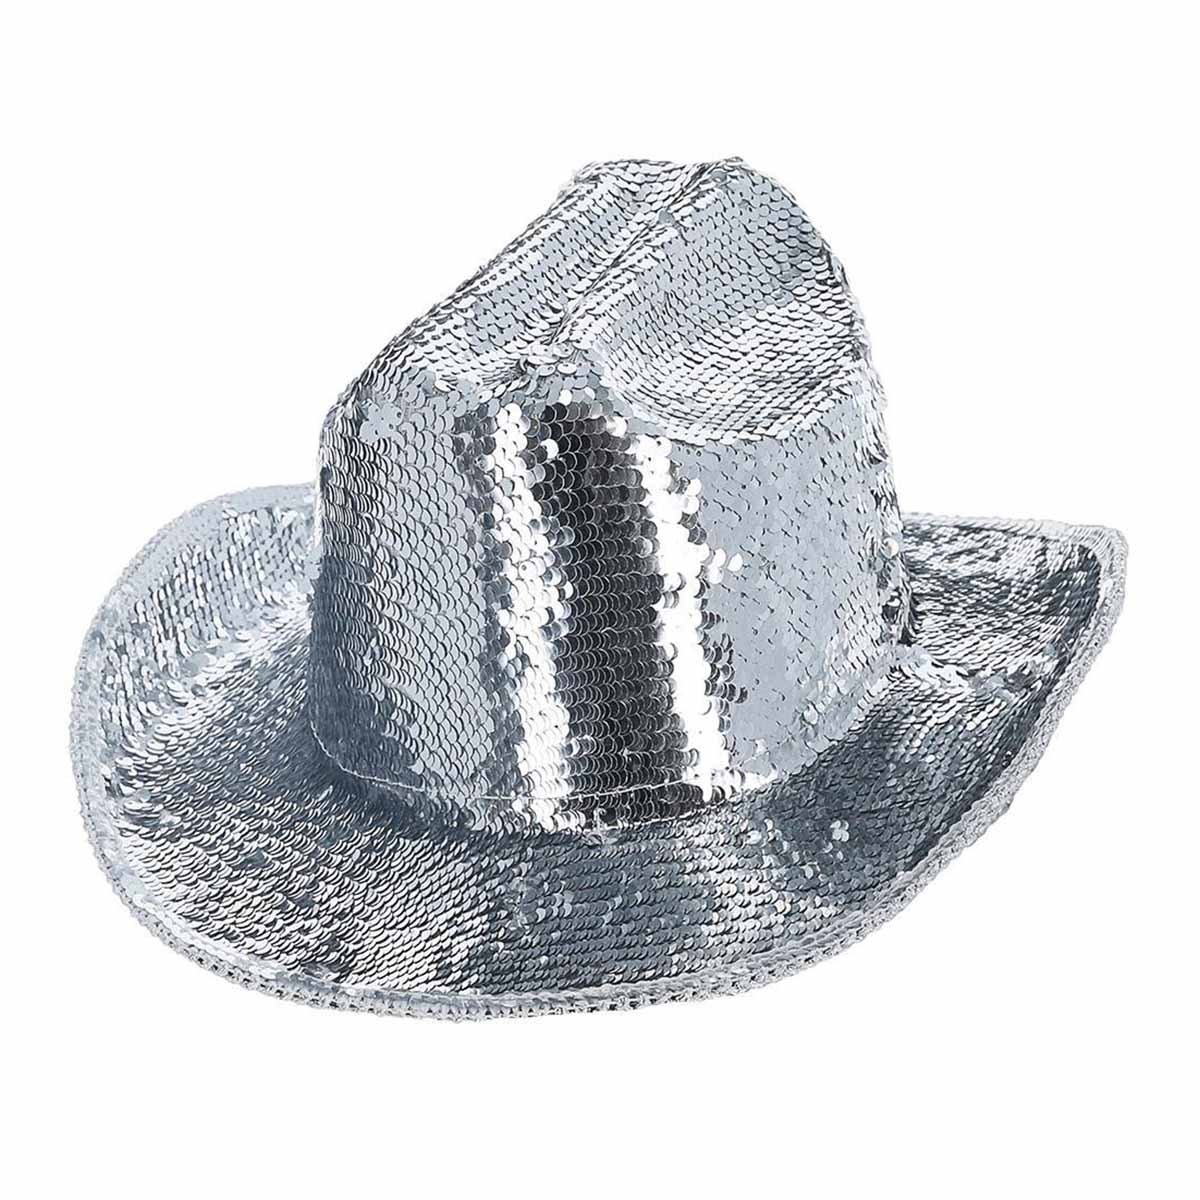 Cowboyhatt Fever deluxe paljetter silver